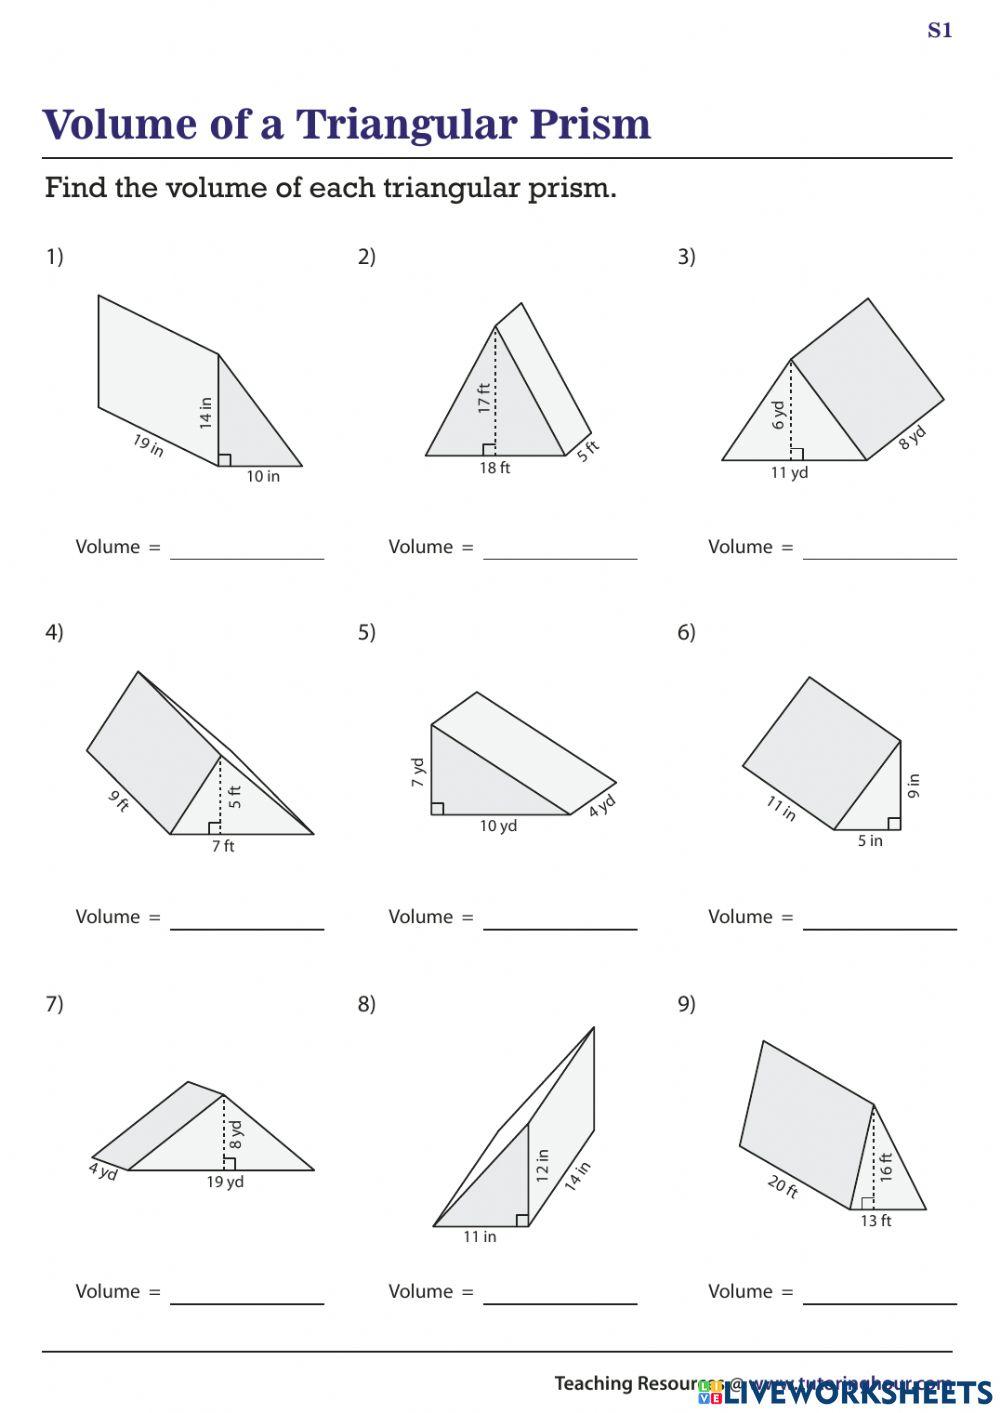 Volume Triangular Prisms